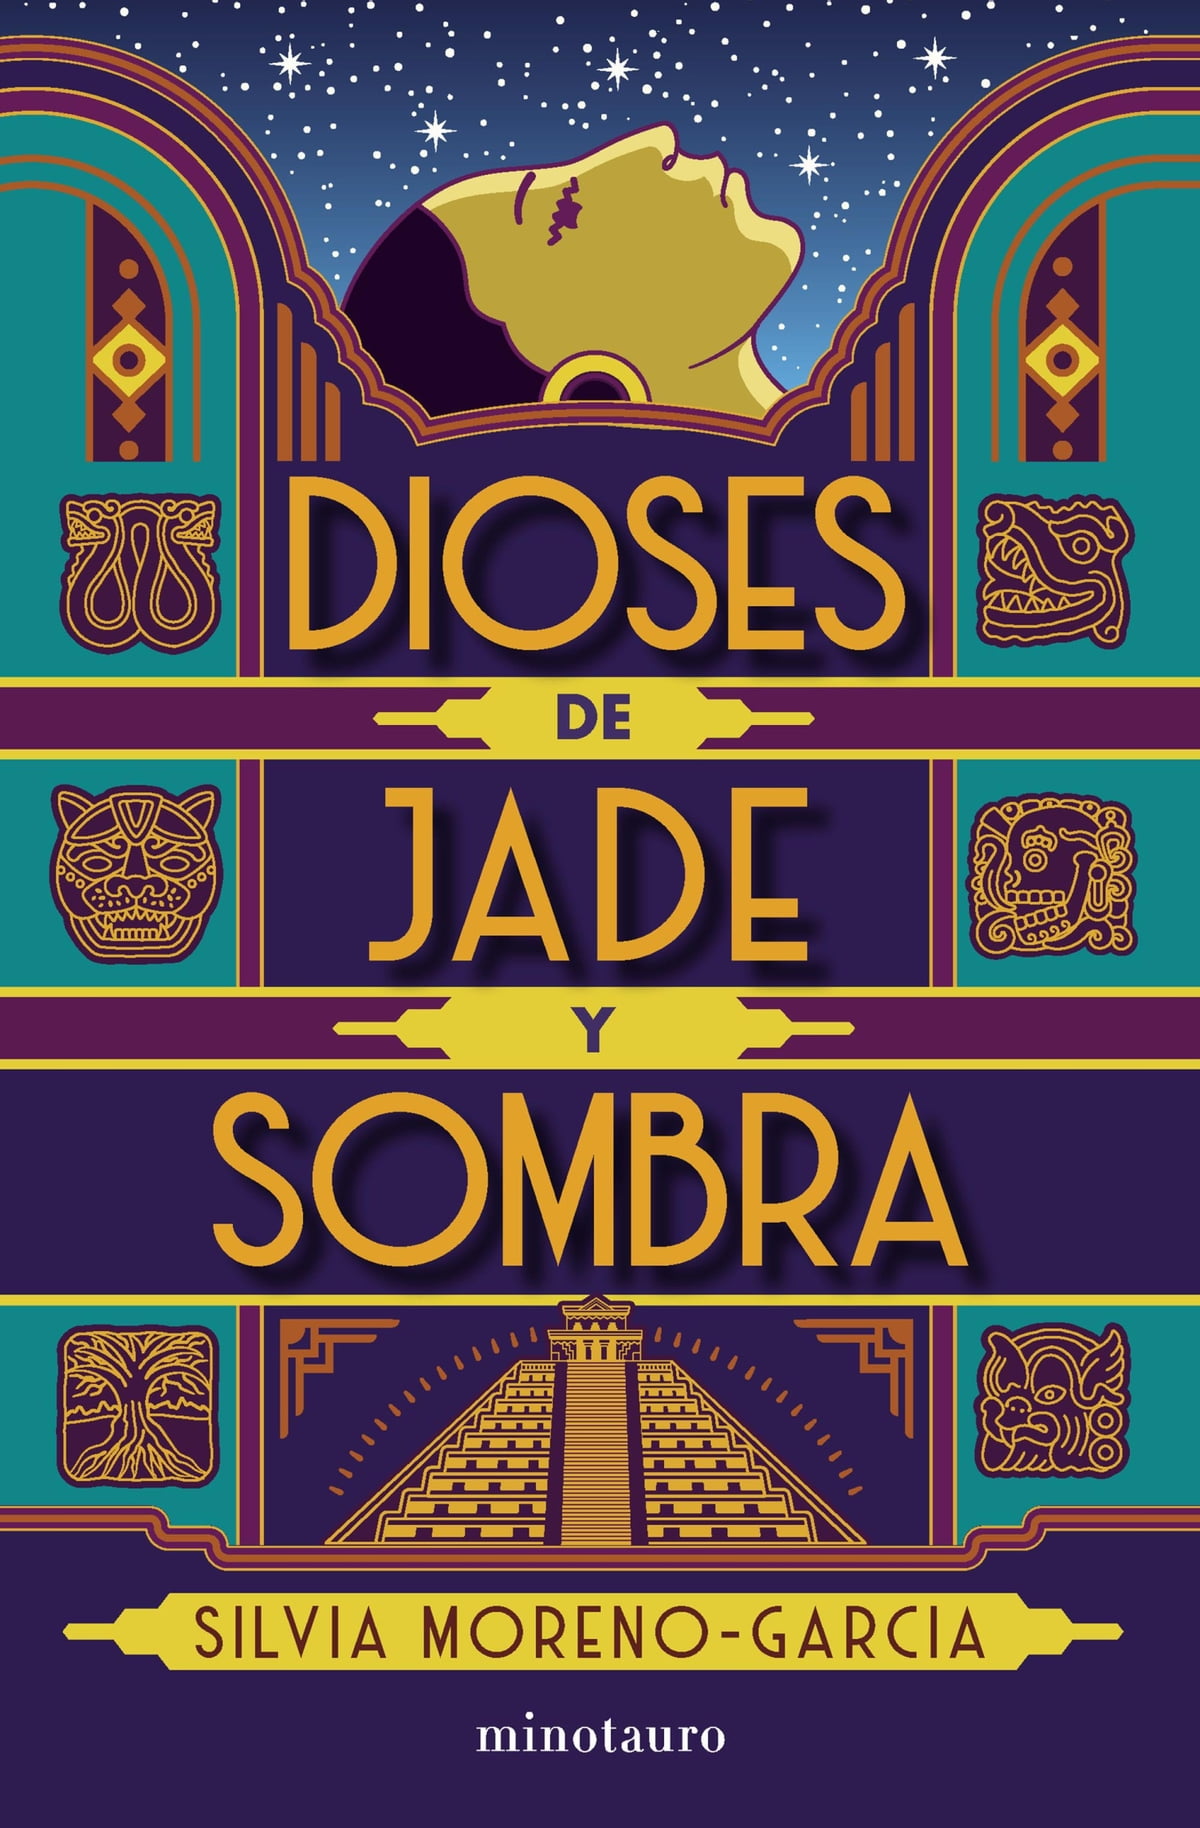 Dioses de jade y sombra (español language, 2021, Minotauro)